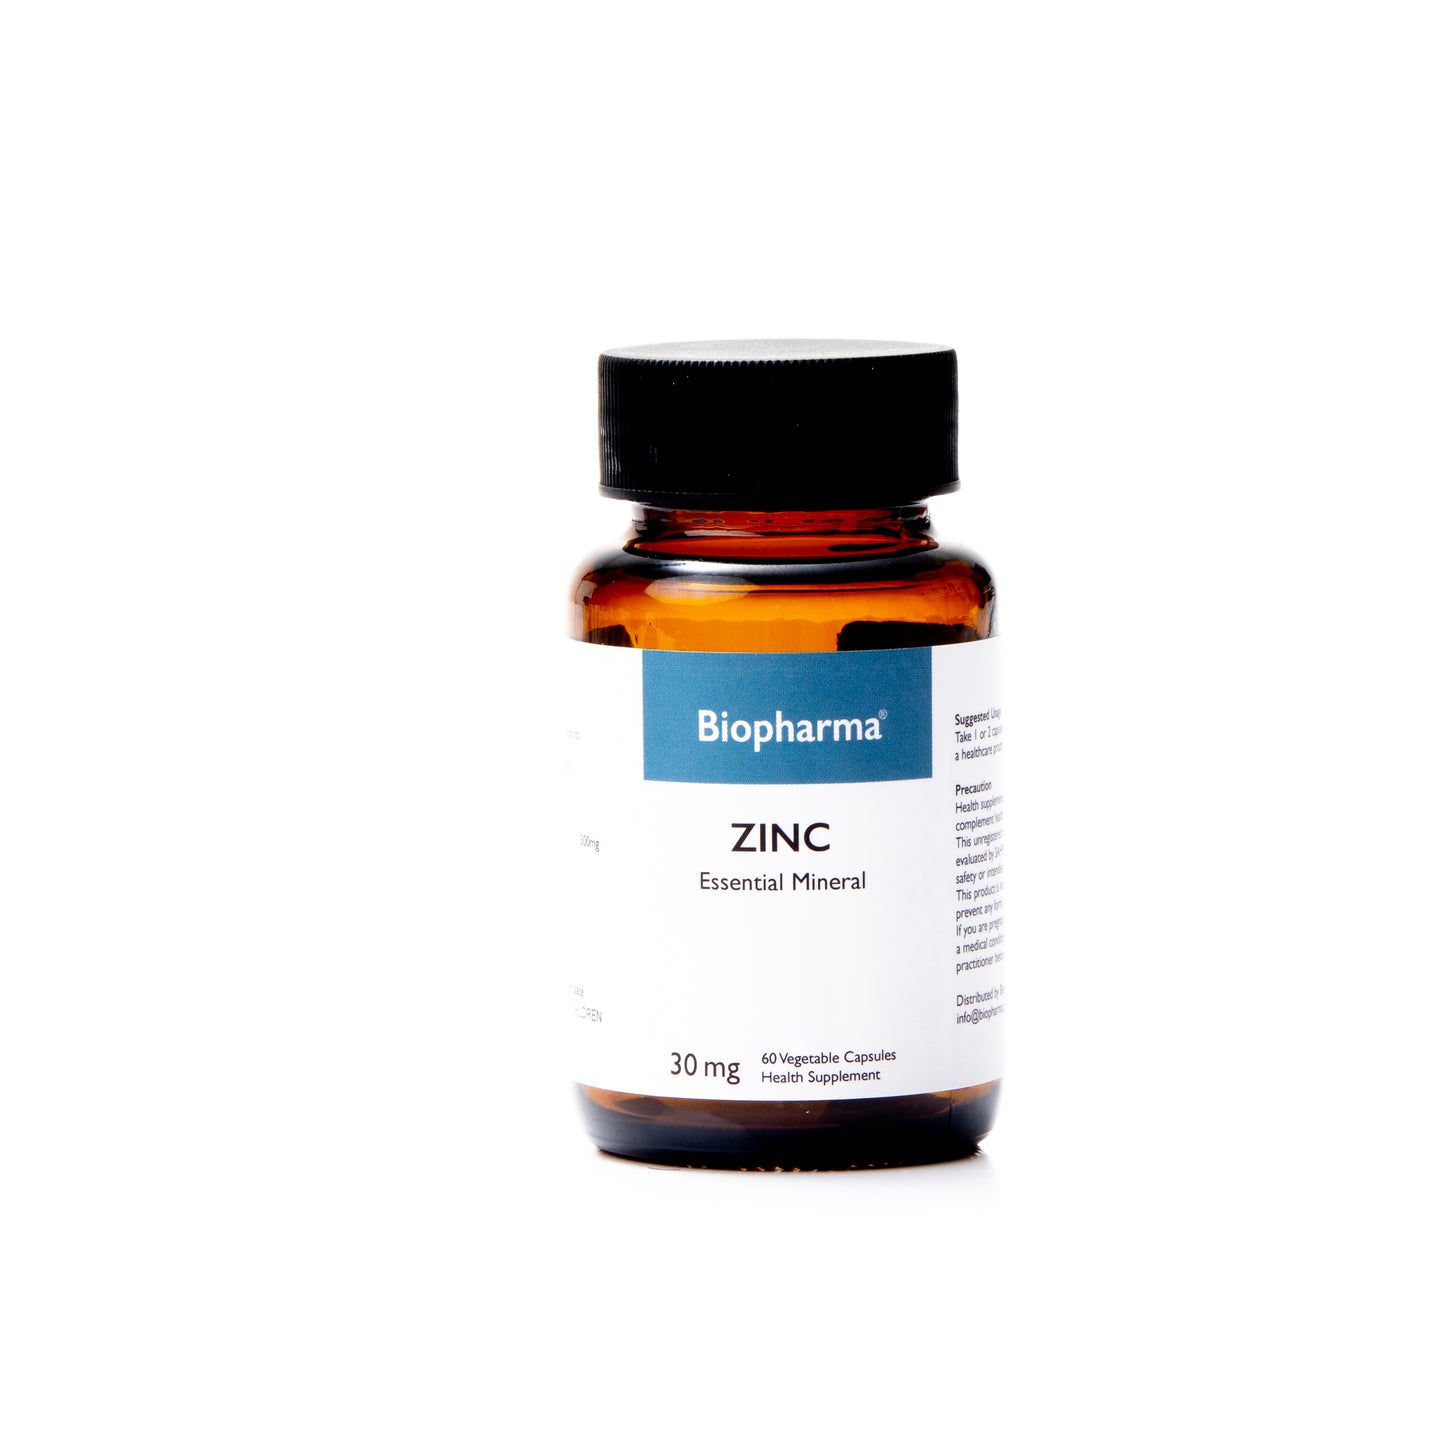 Biopharma Zinc 30mg Supplements - 60 Veg Capsules